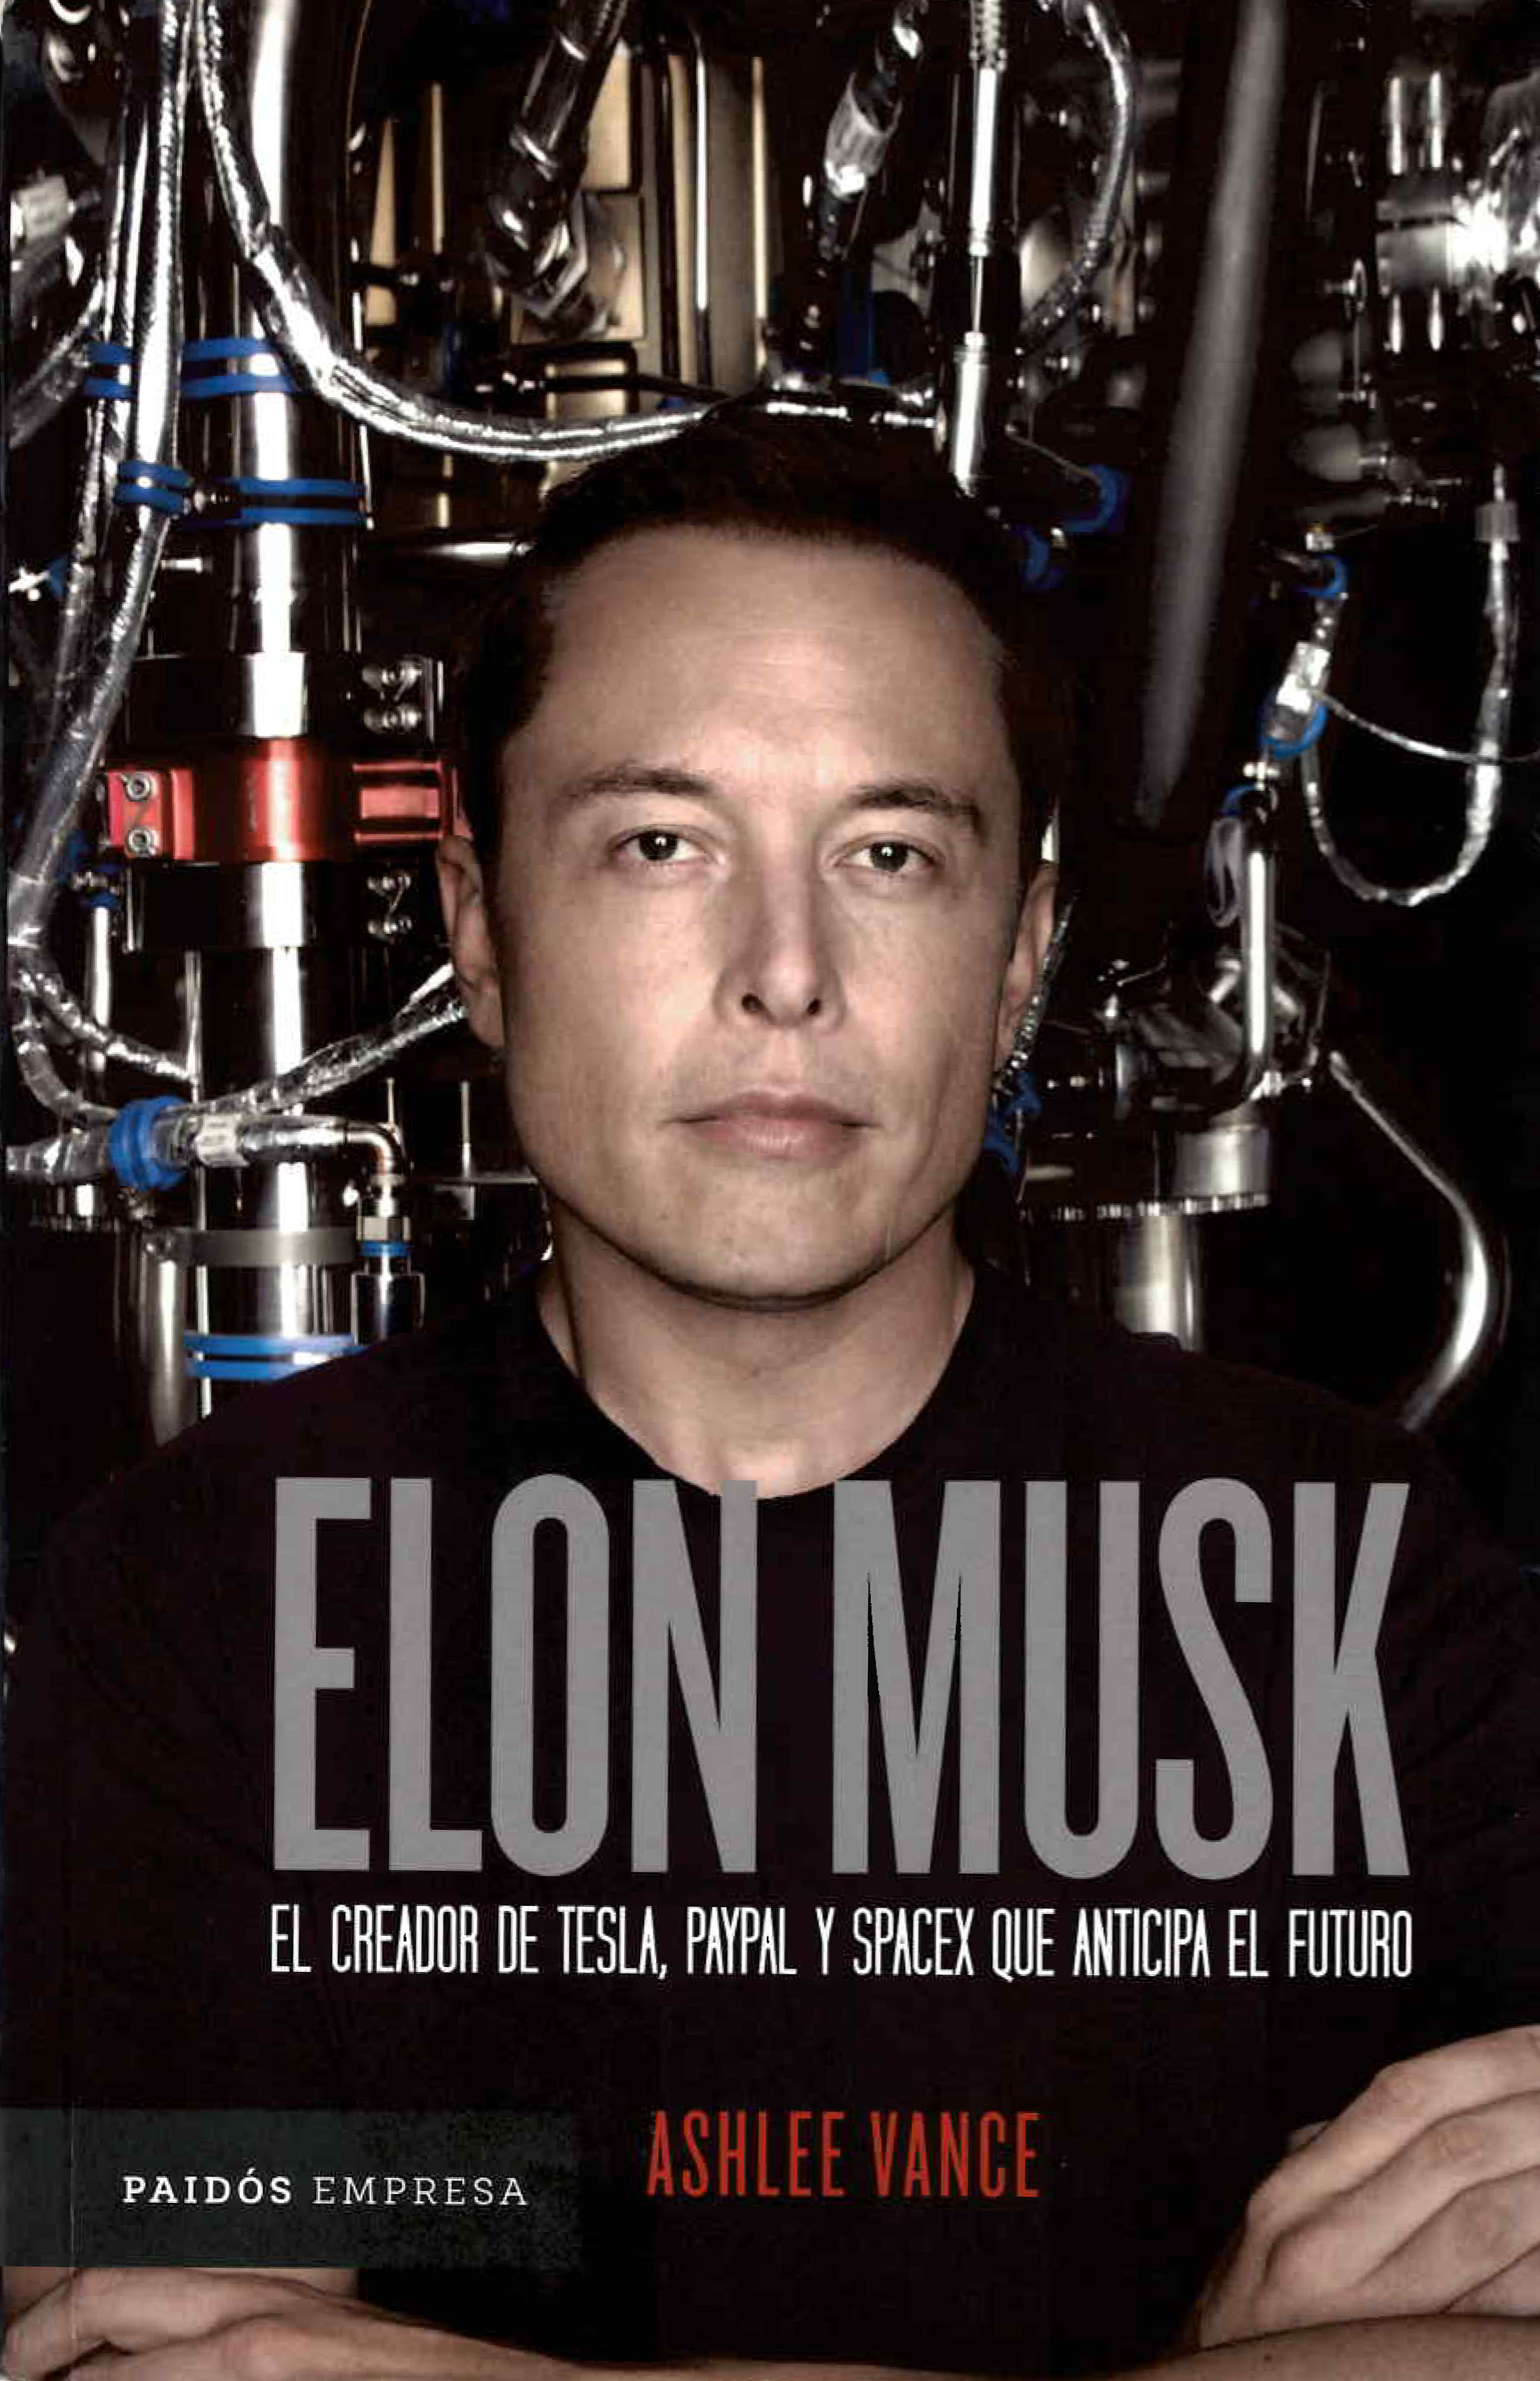 "Elon Musk, el creador de Tesla, PayPal y SpaceX que anticipa el futuro", la biografía sobre Musk que escribió el autor Ashlee Vance